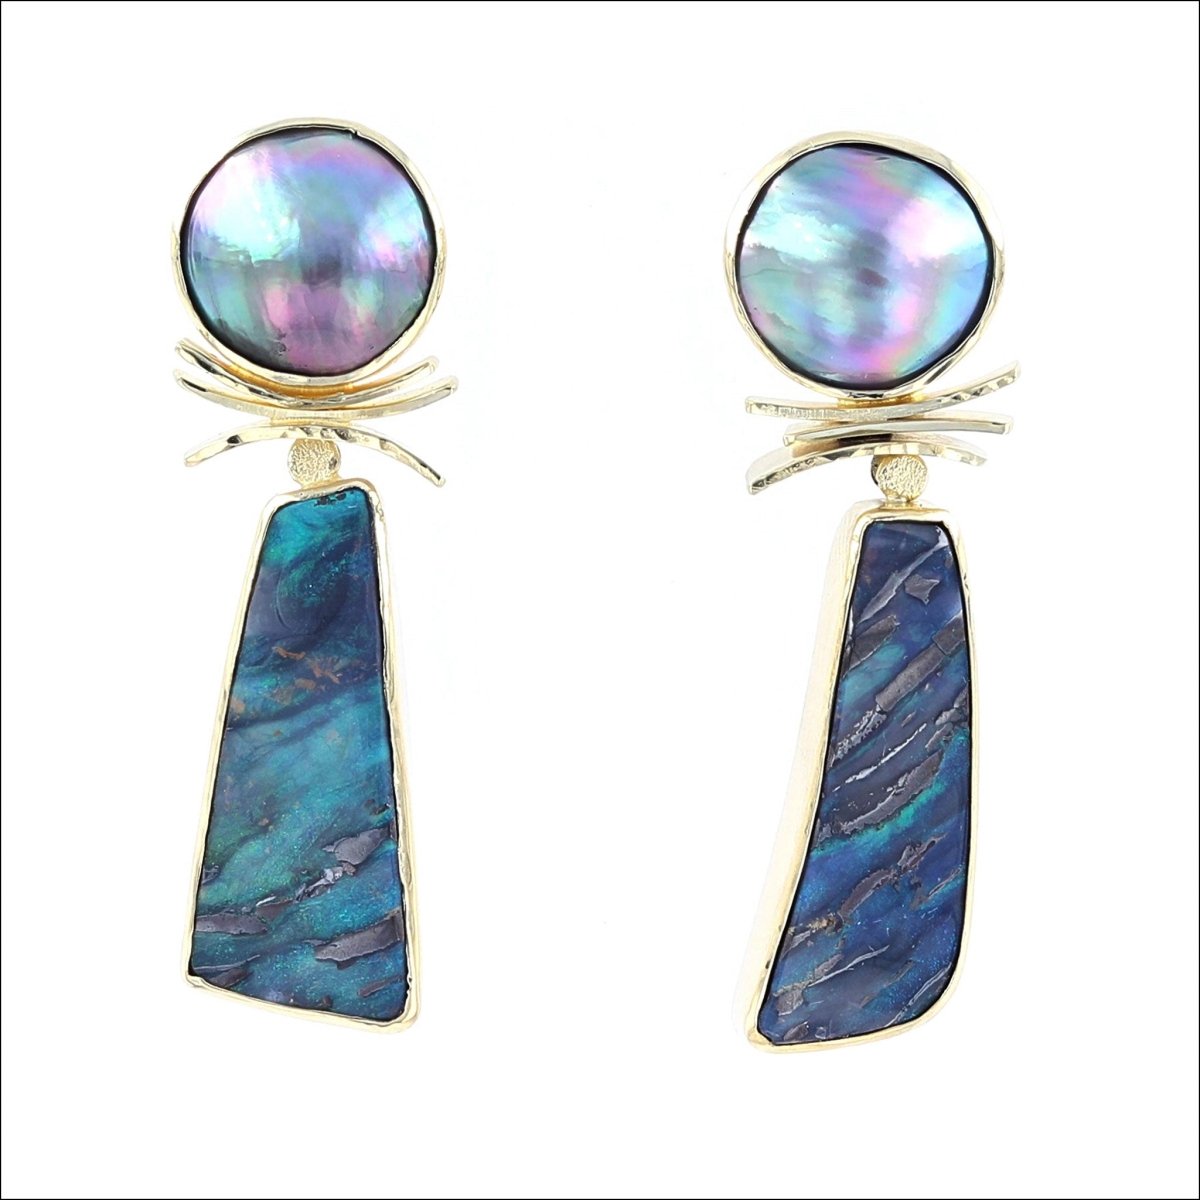 Freeform Boulder Opal Sea of Cortez Pearl Earrings 18KY - JewelsmithEarrings